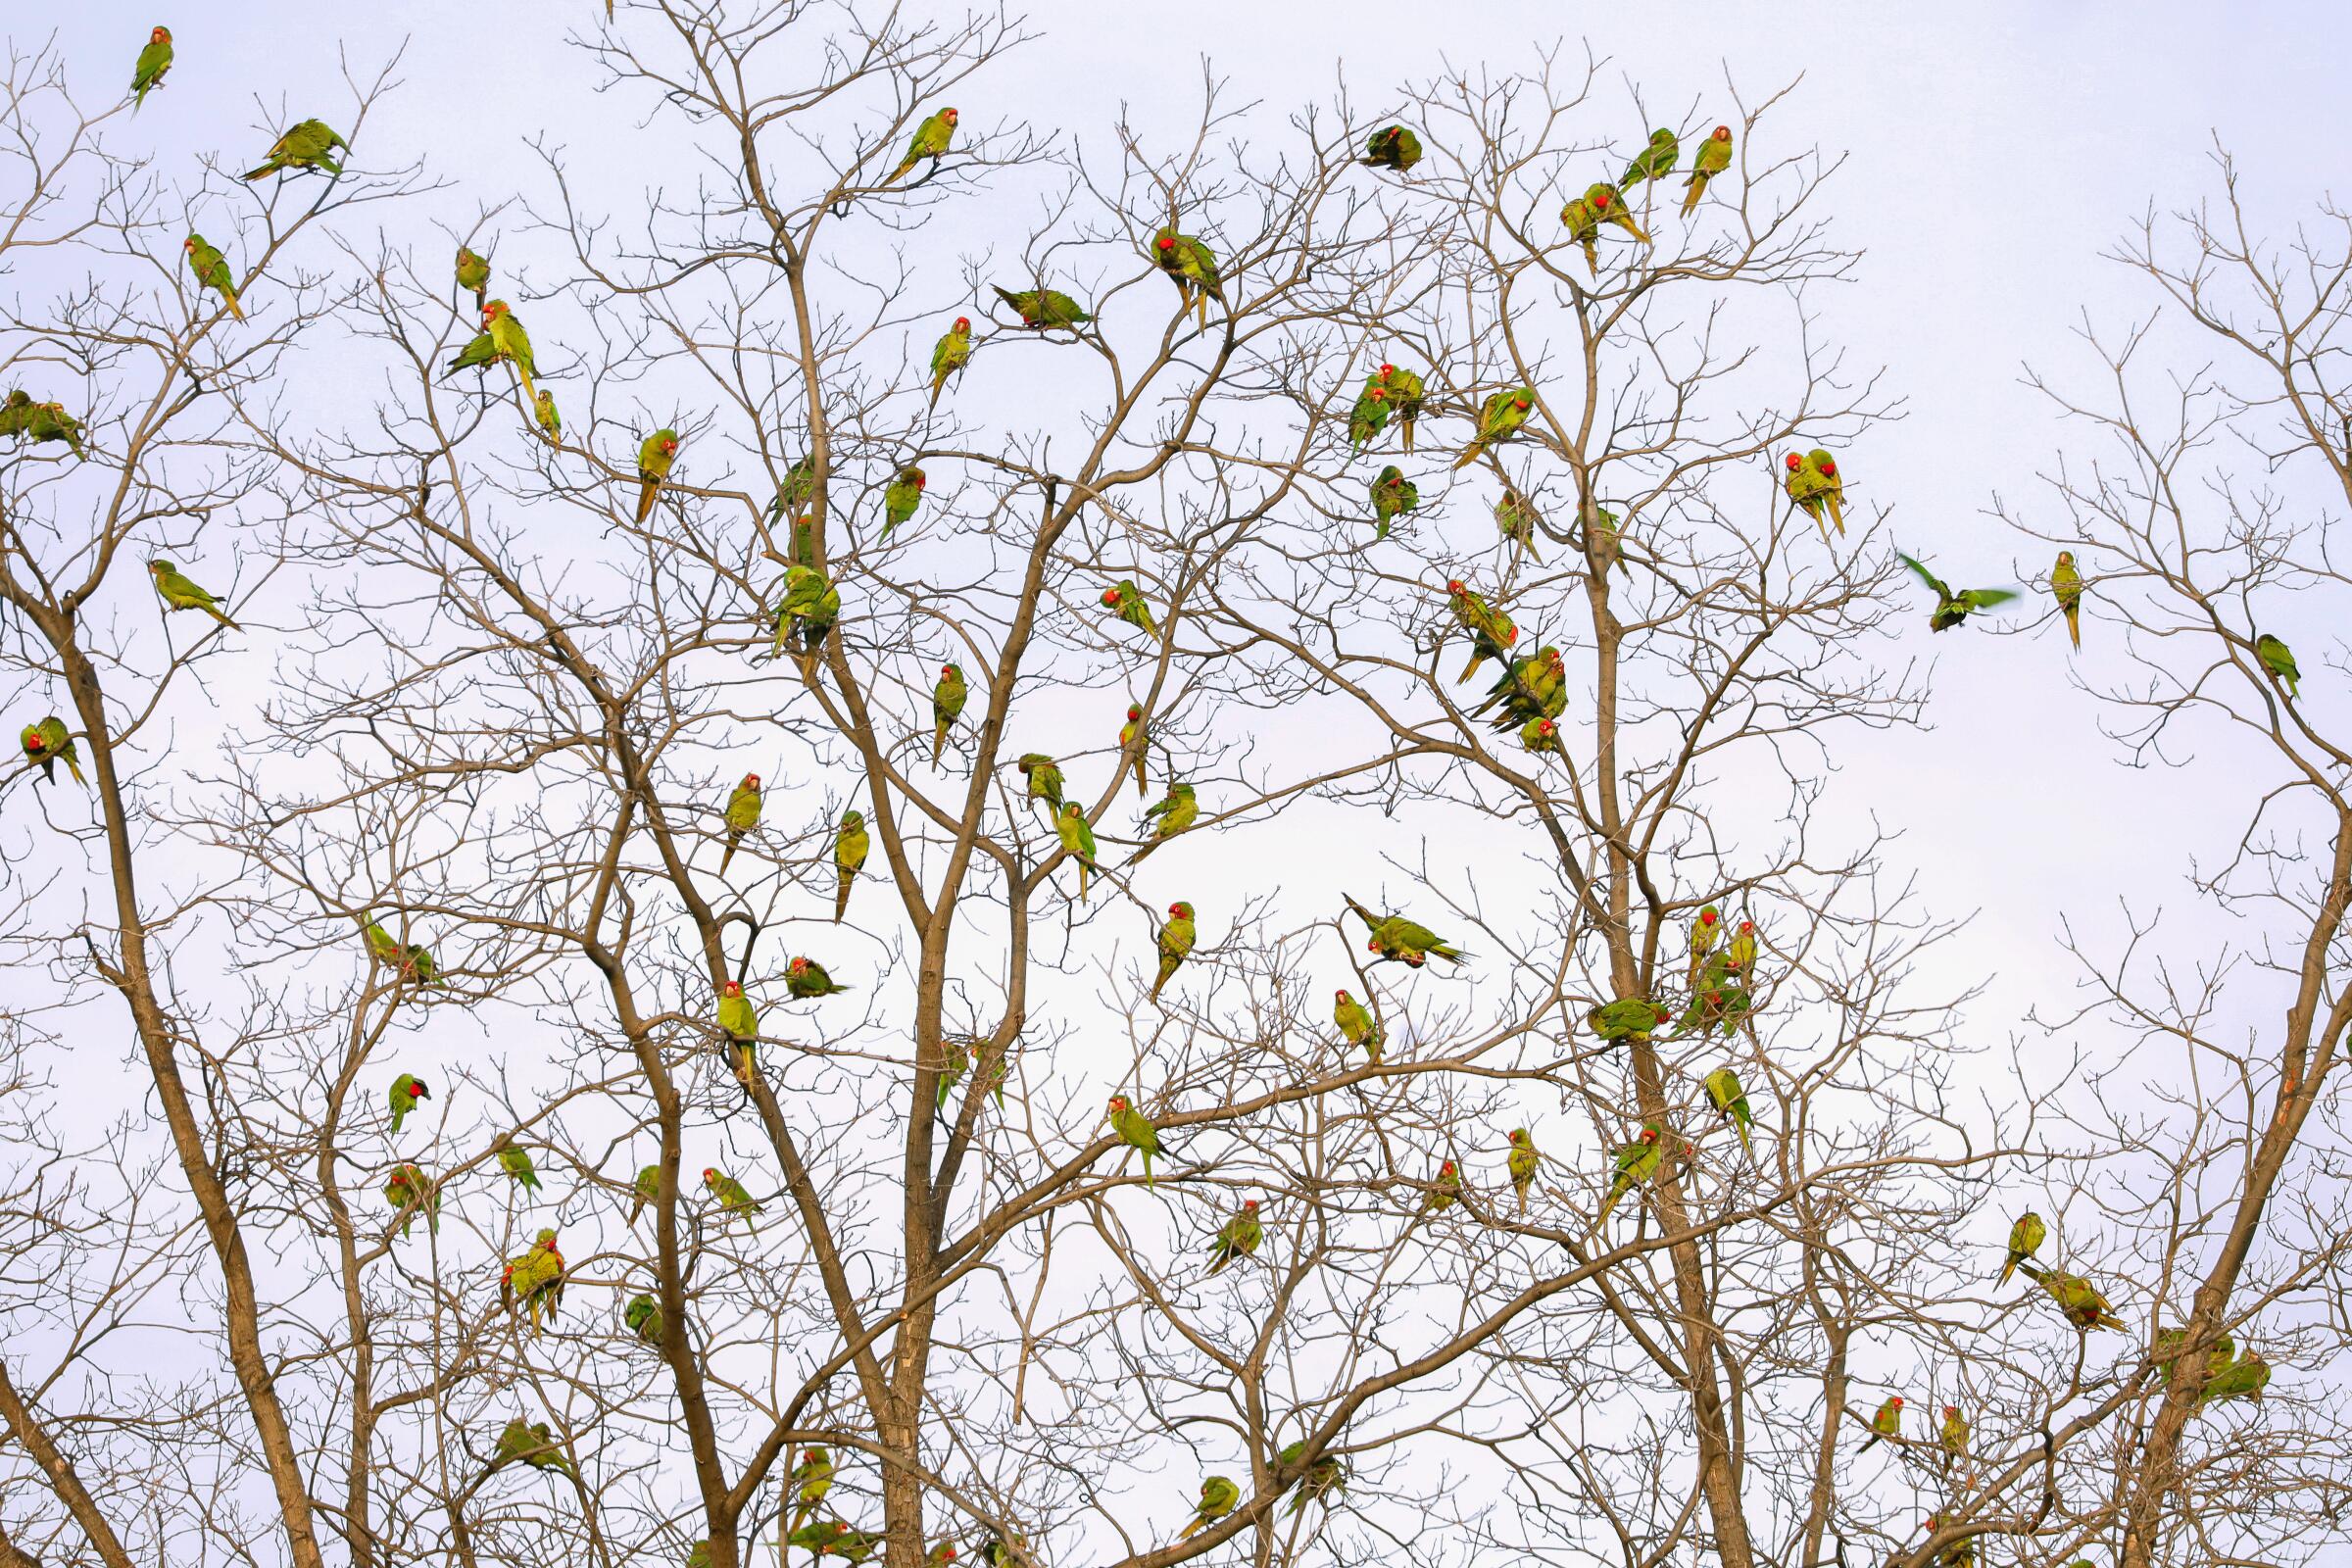 Seasonal parrots gathering in a tree.